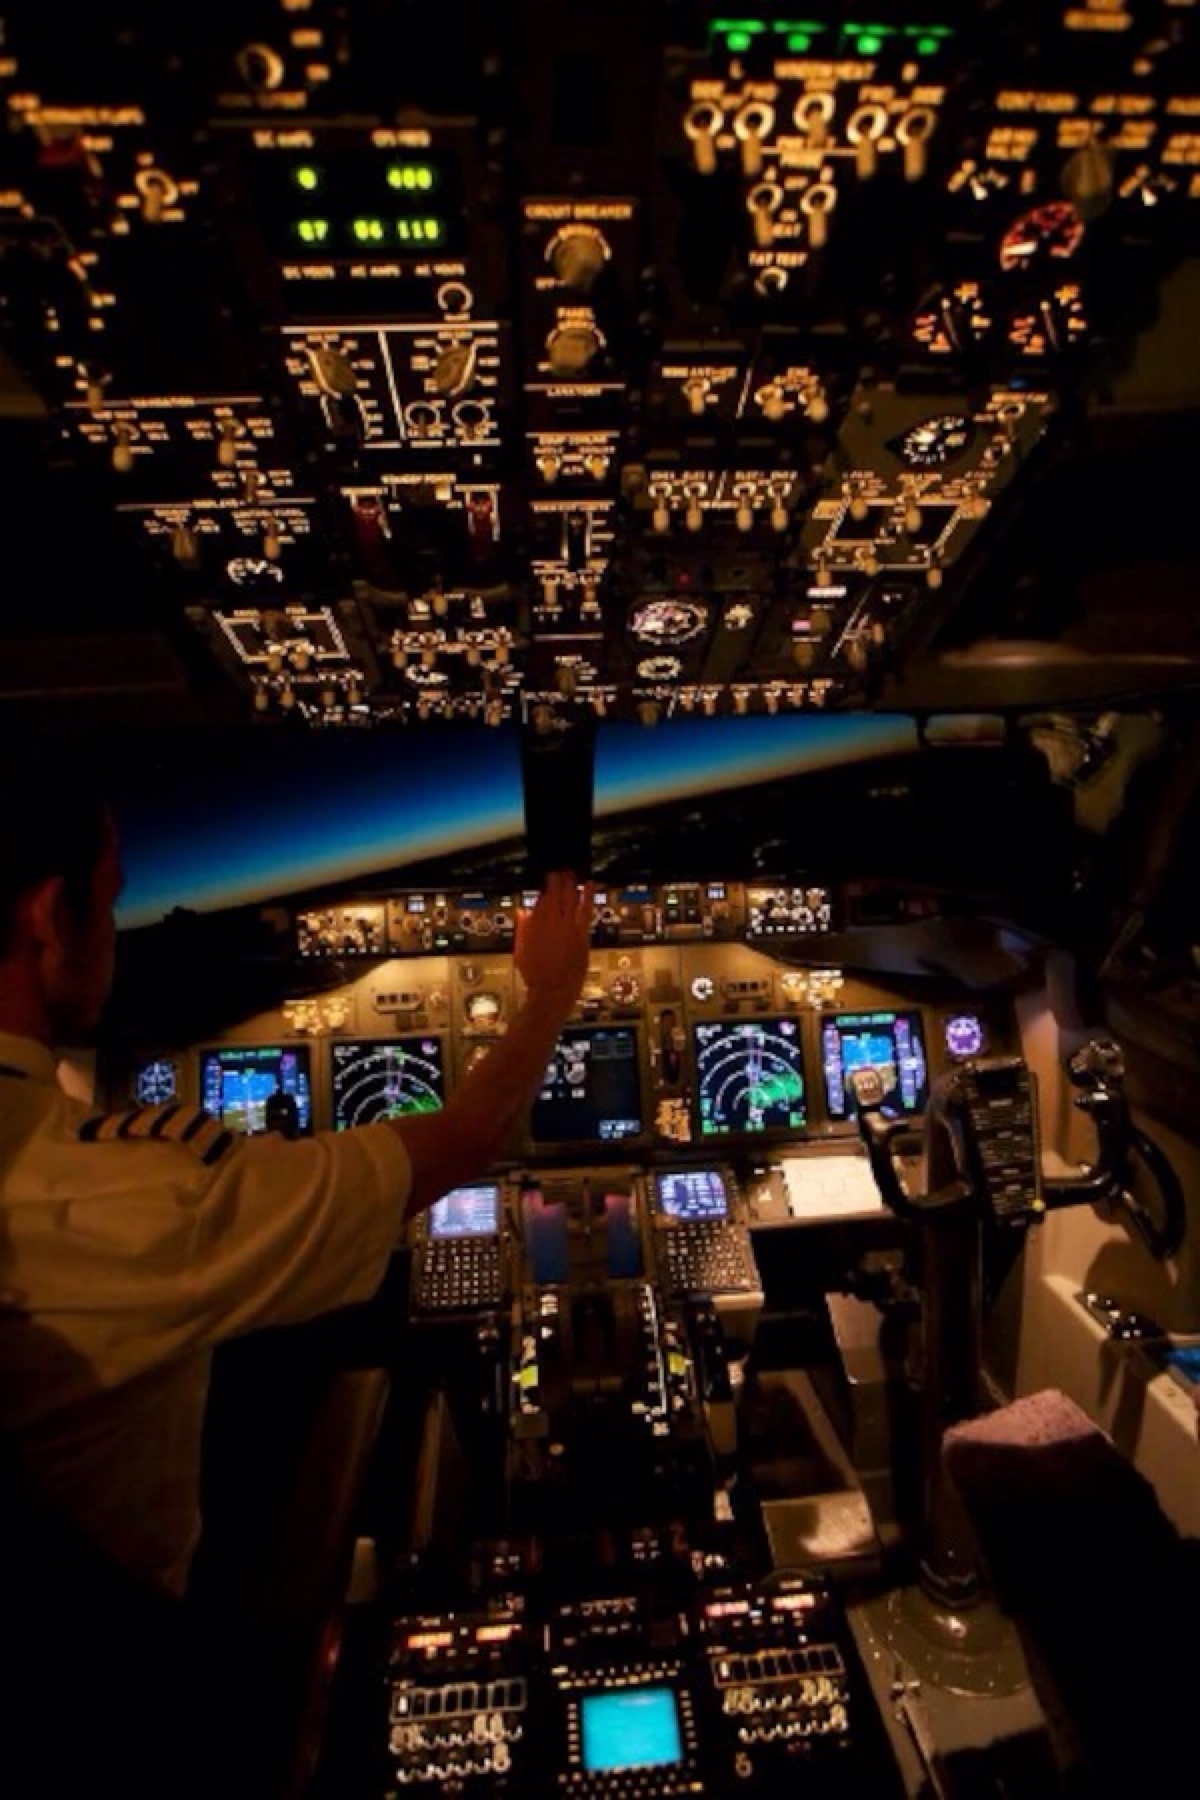 747-800客机驾驶室图片